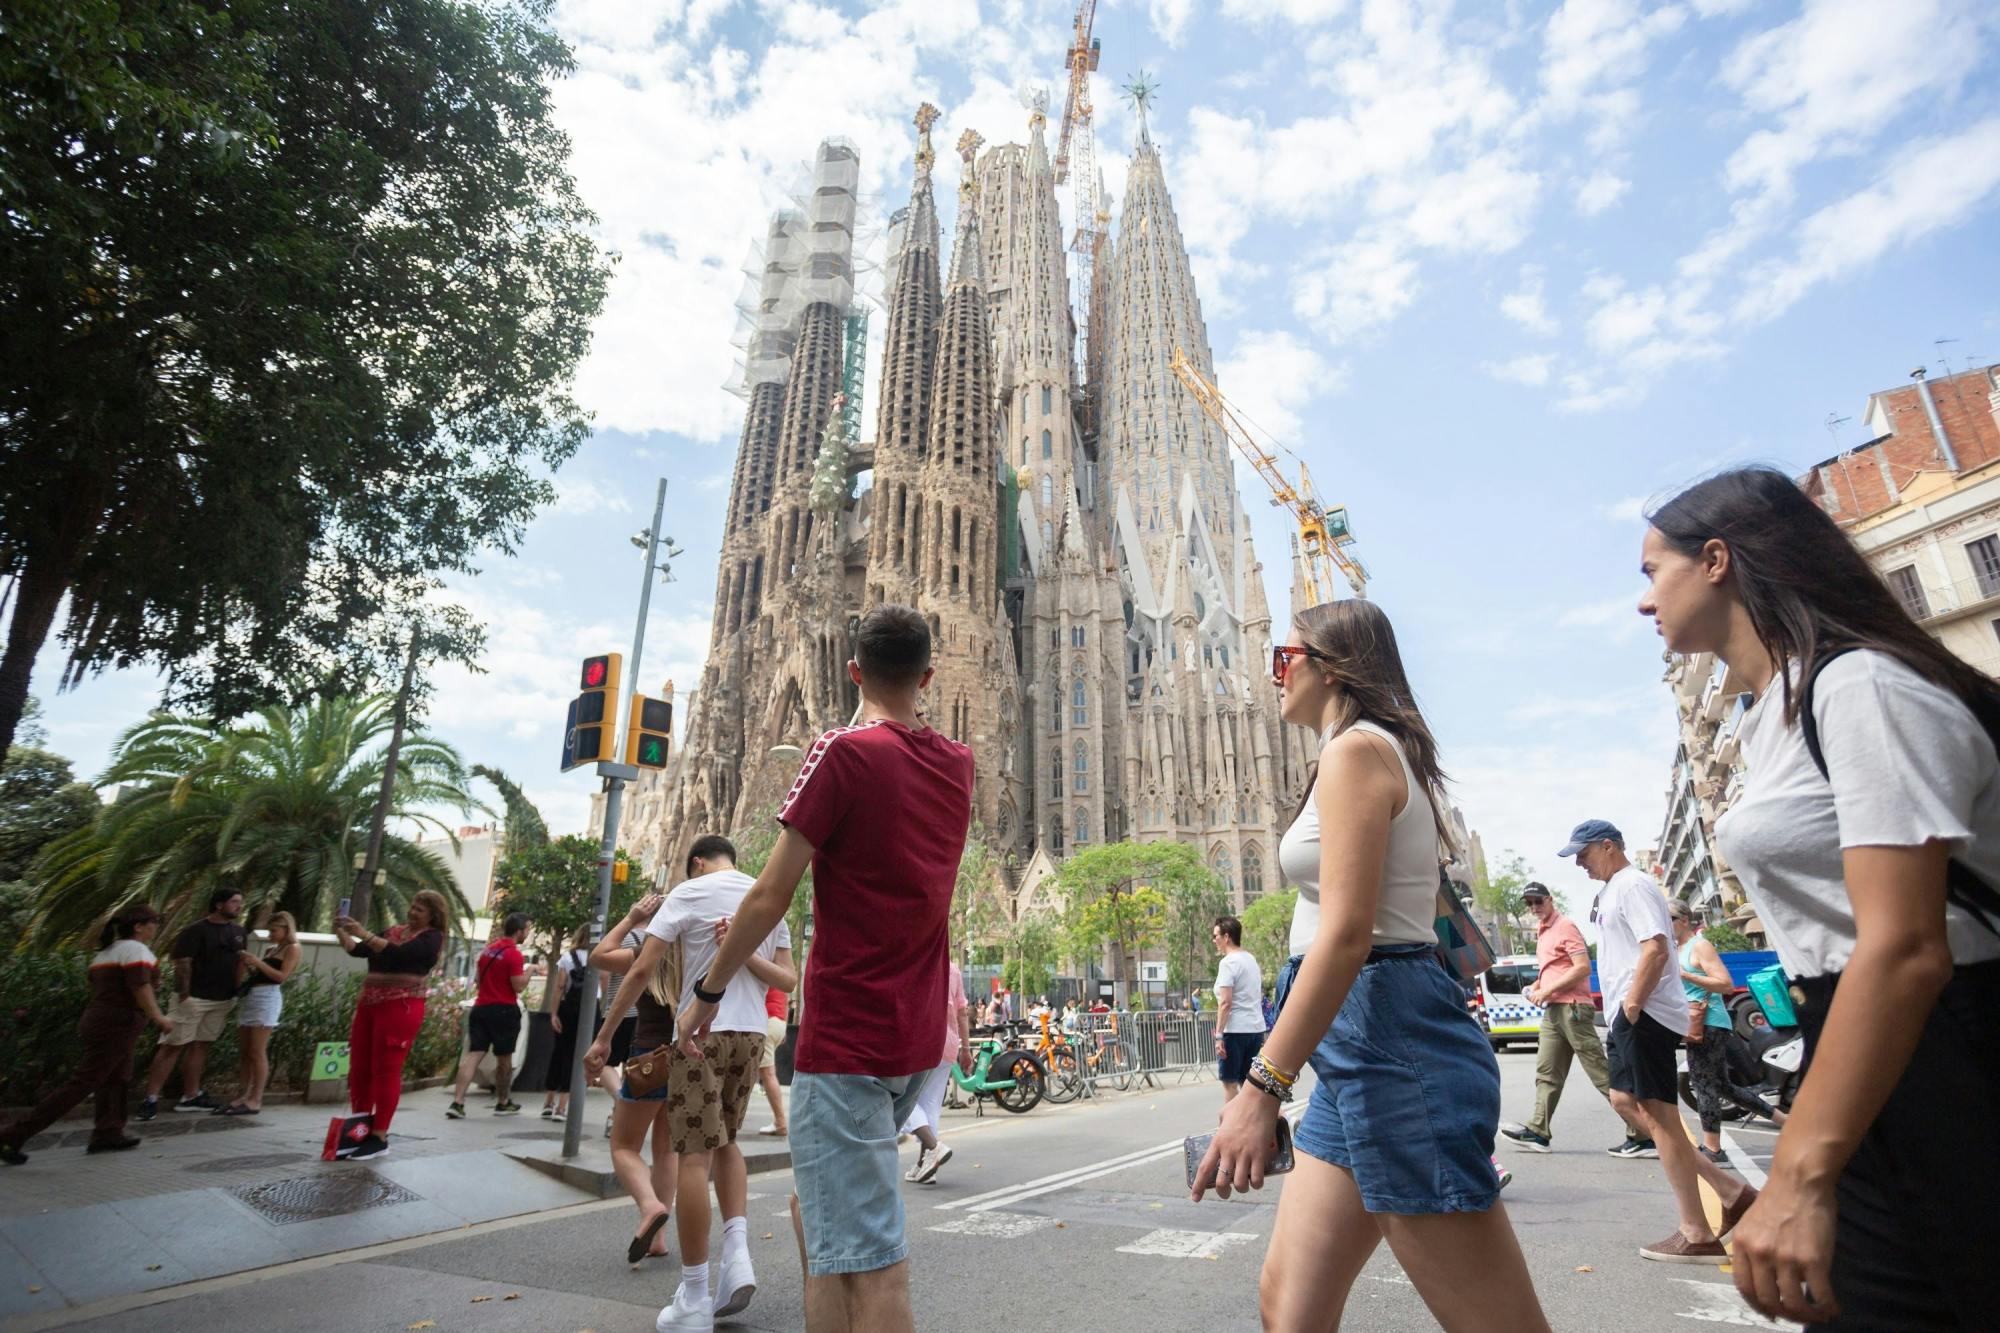 Entradas y visita guiada a la Sagrada Família